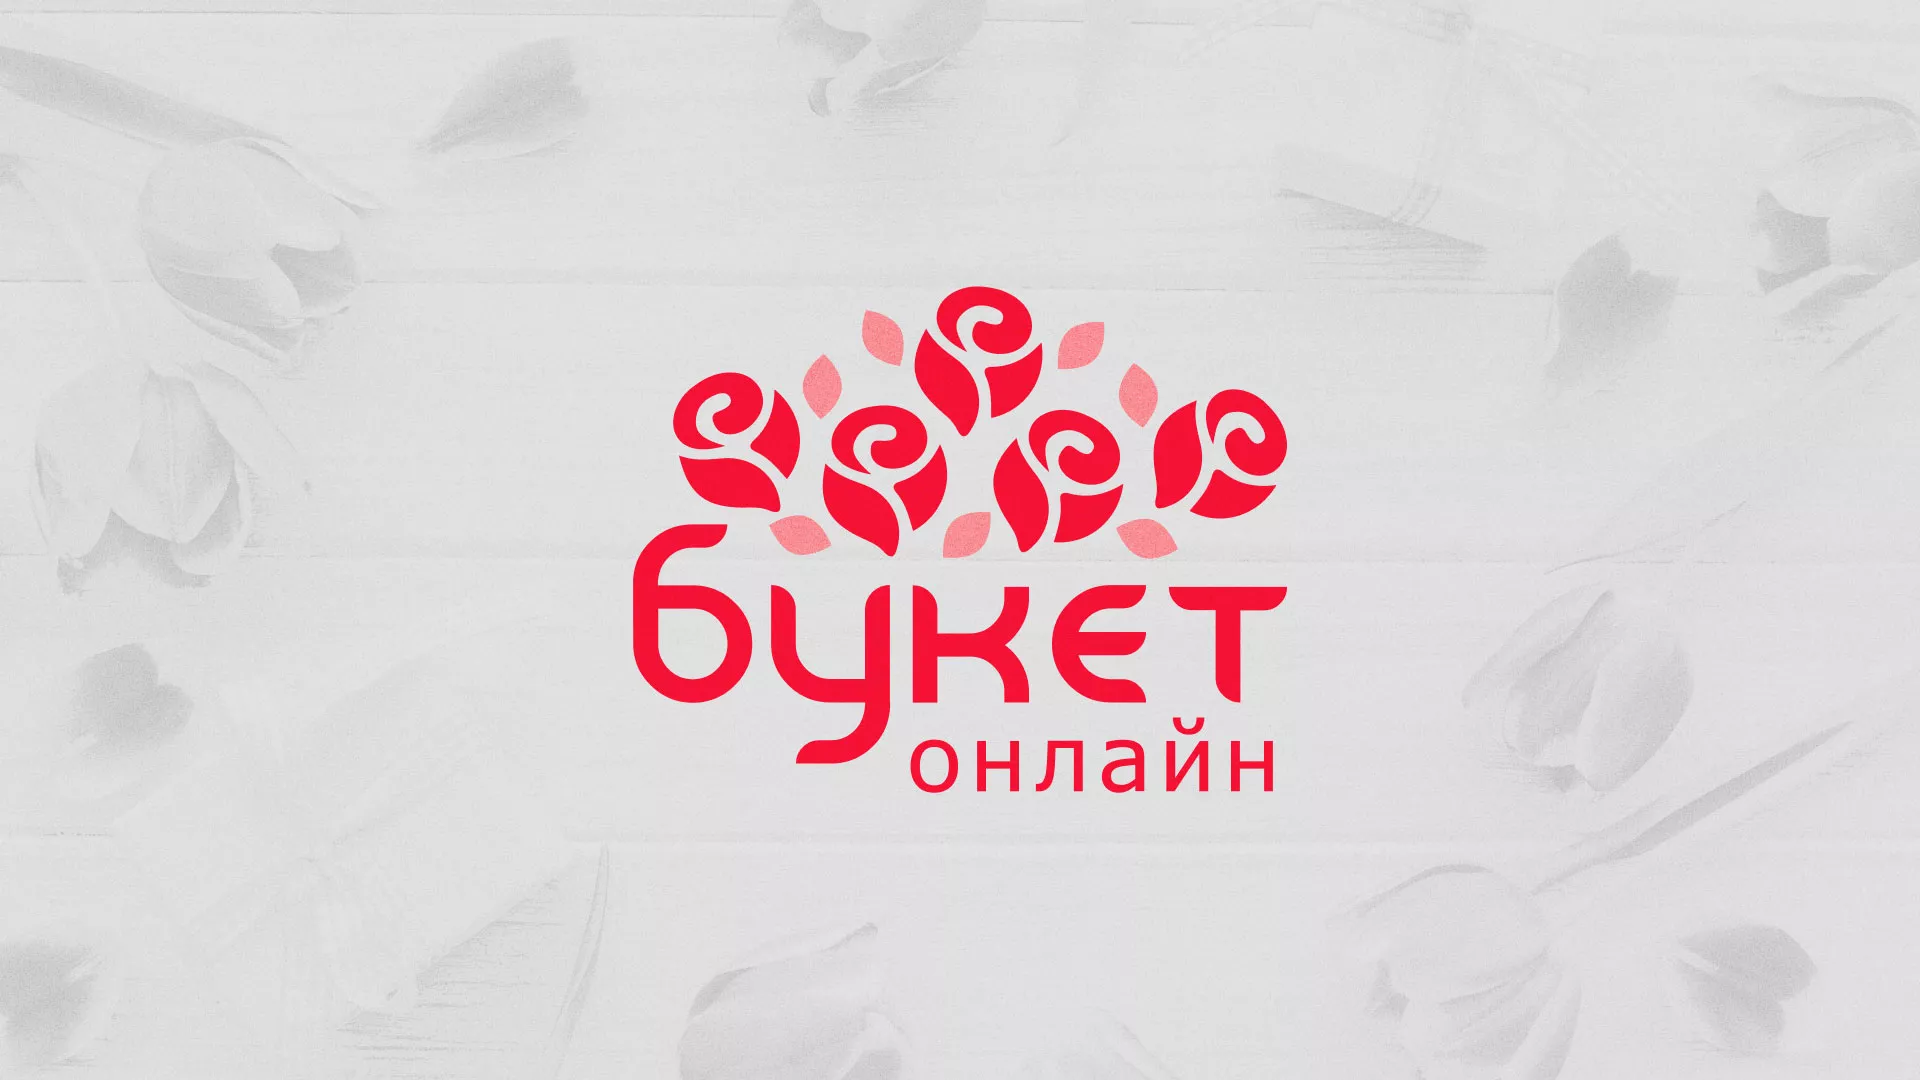 Создание интернет-магазина «Букет-онлайн» по цветам в Белово